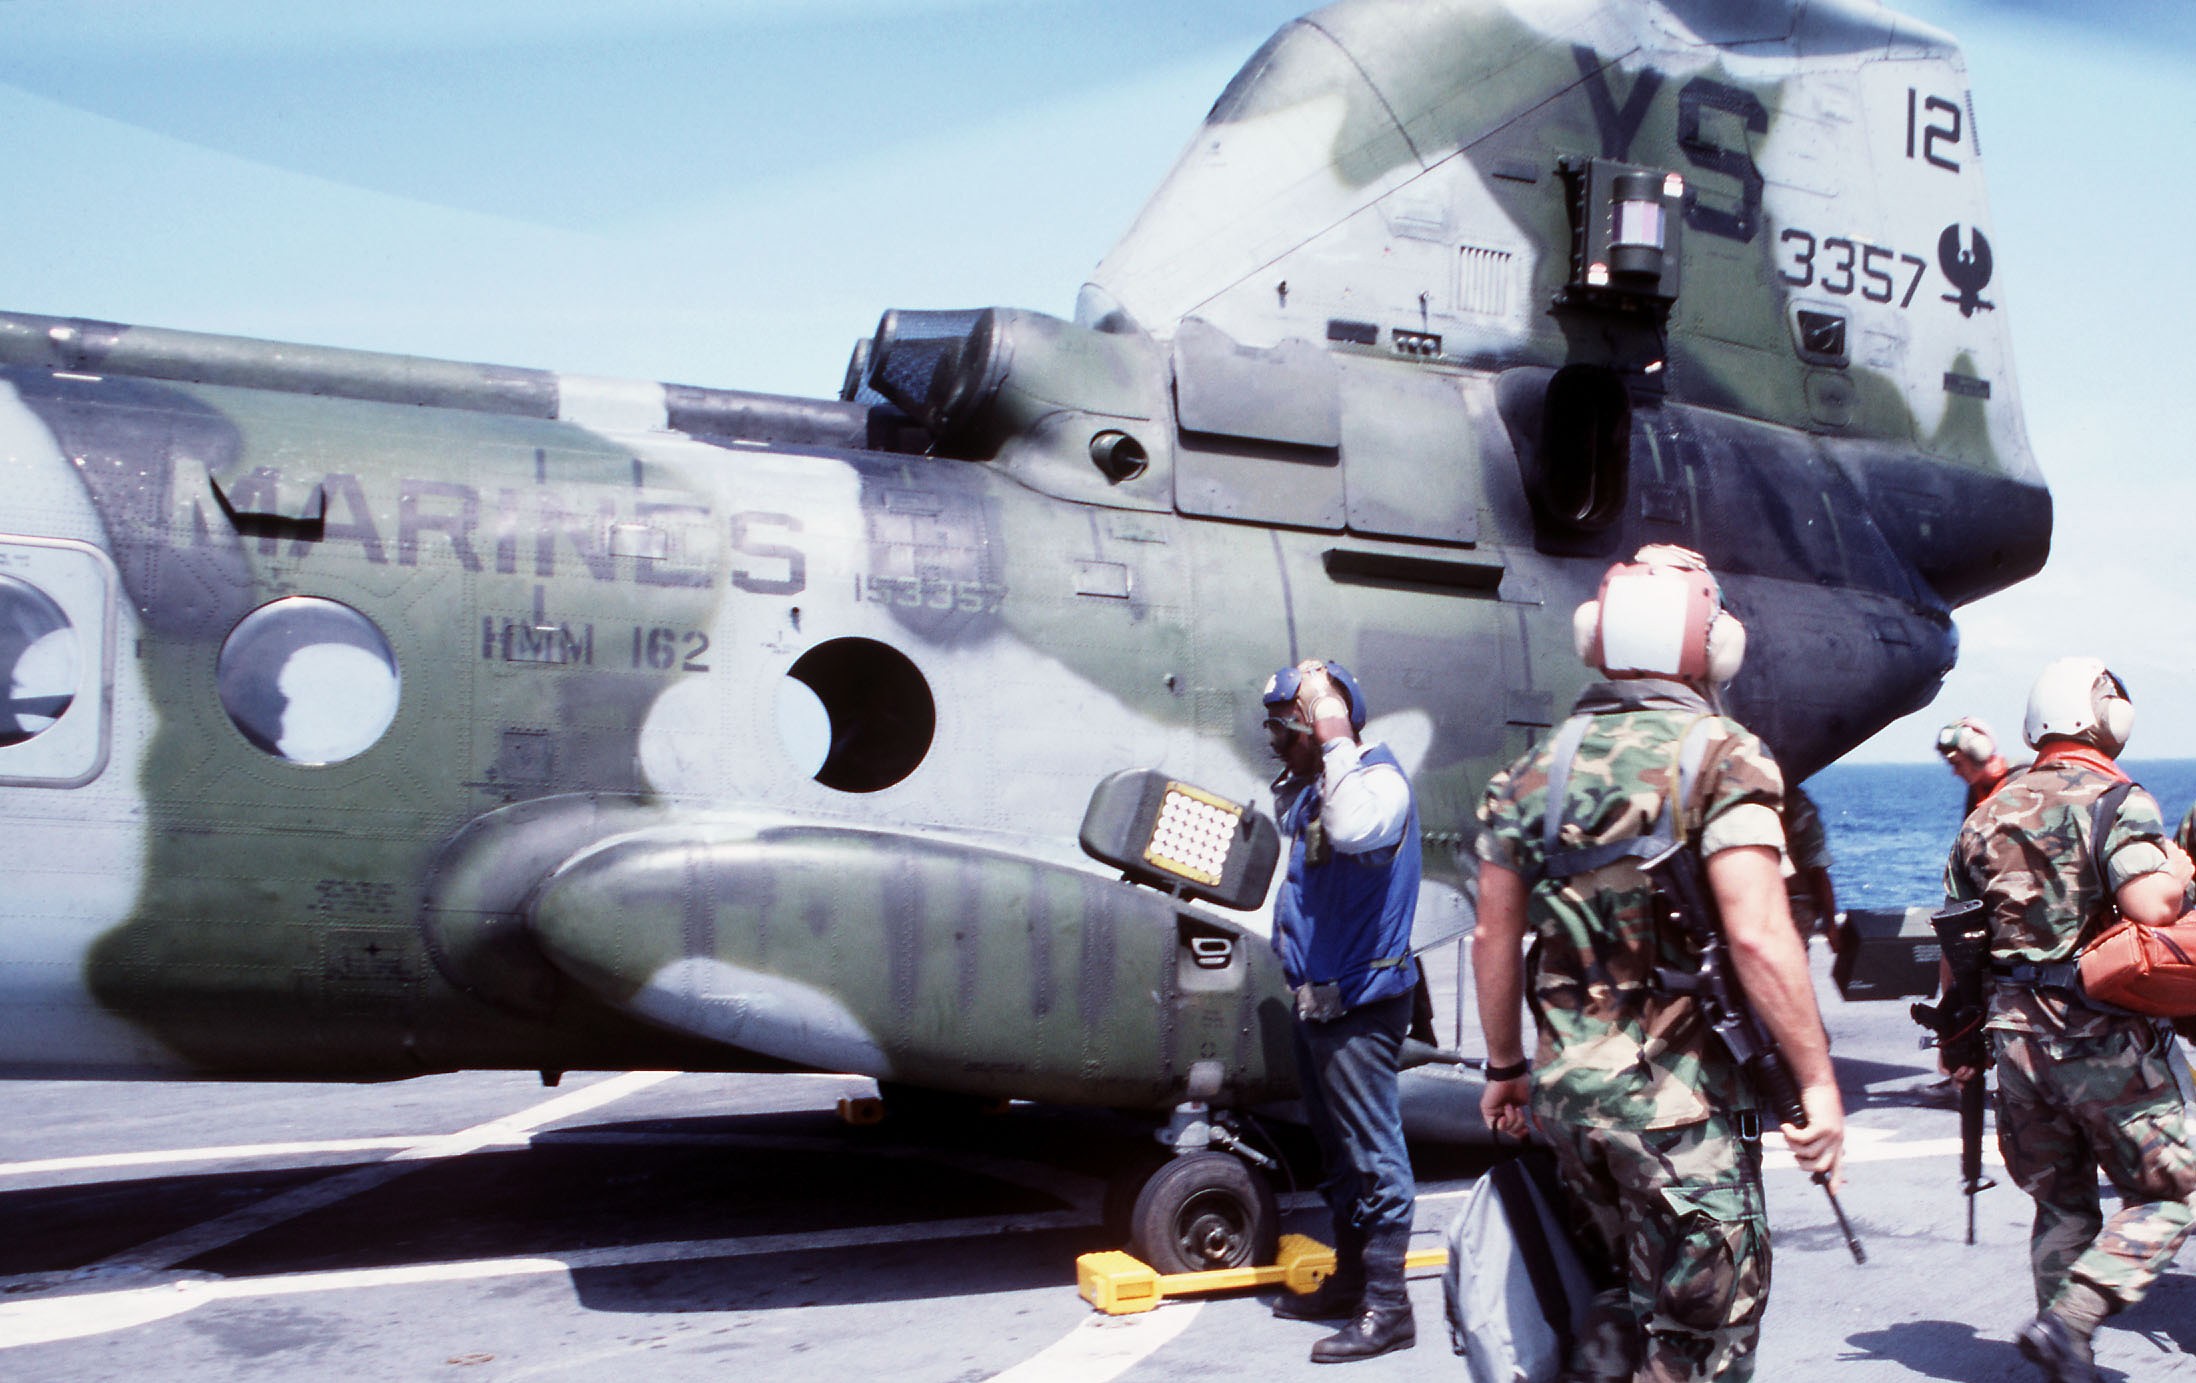 hmm-162 golden eagles marine medium helicopter squadron ch-46e sea knight usmc 32